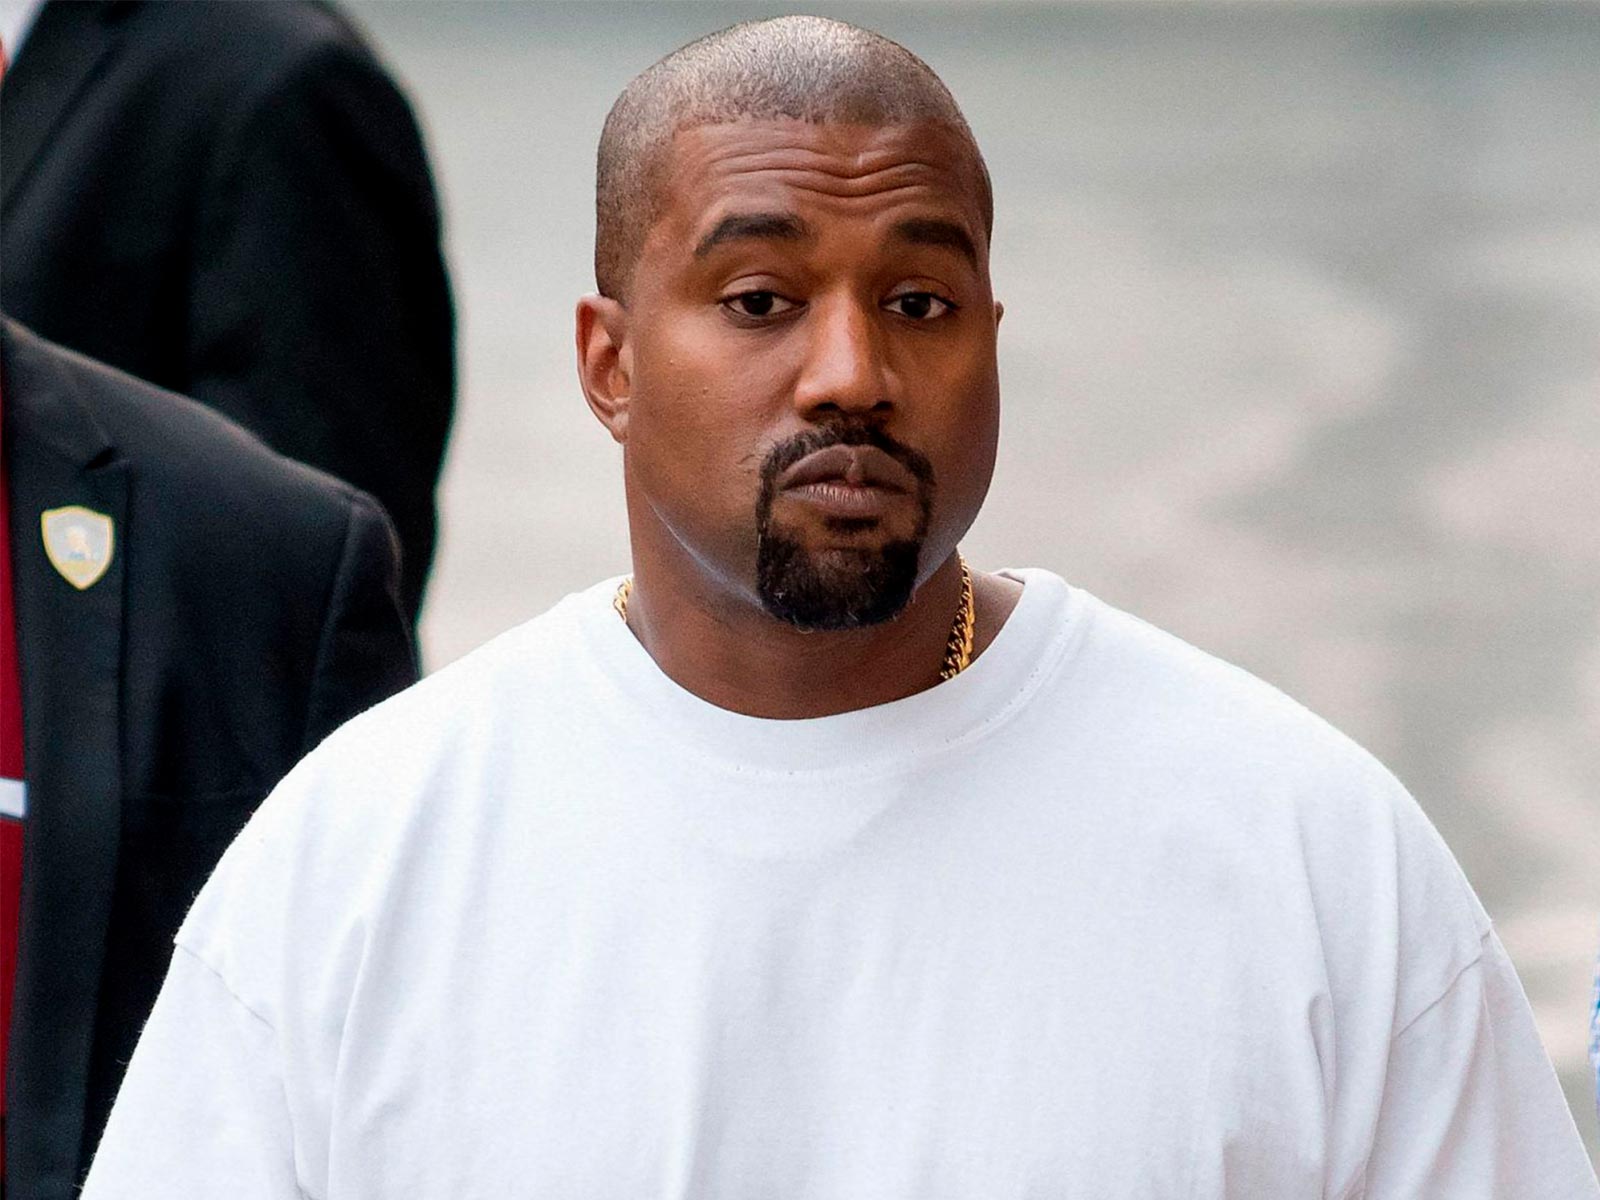 Kanye acusa a adidas de lanzar el YEEZY Day sin su aprobación